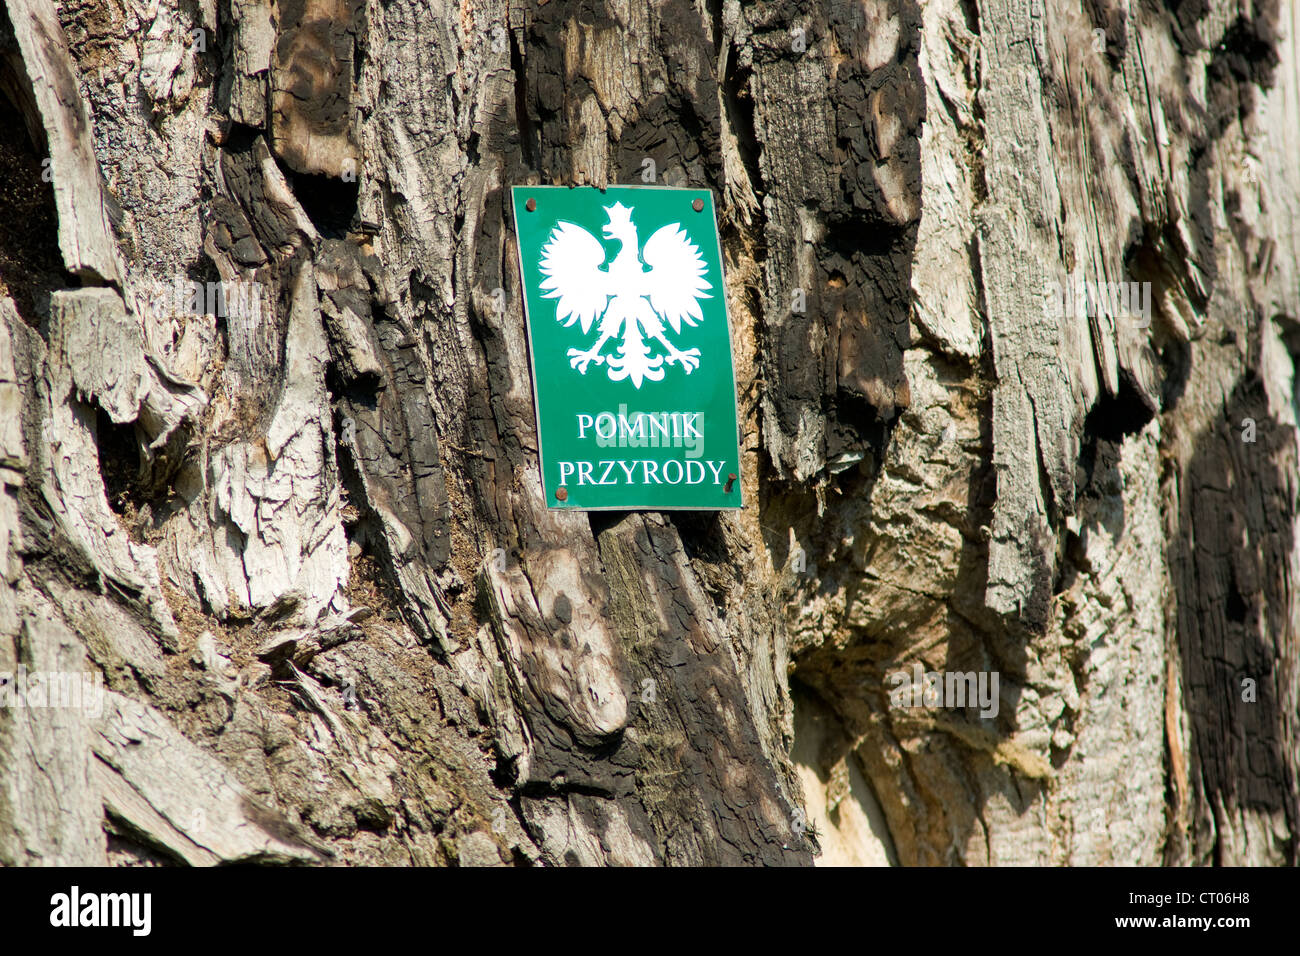 Vieux tilleul. Patrimoine Naturel protégé en Pologne Banque D'Images